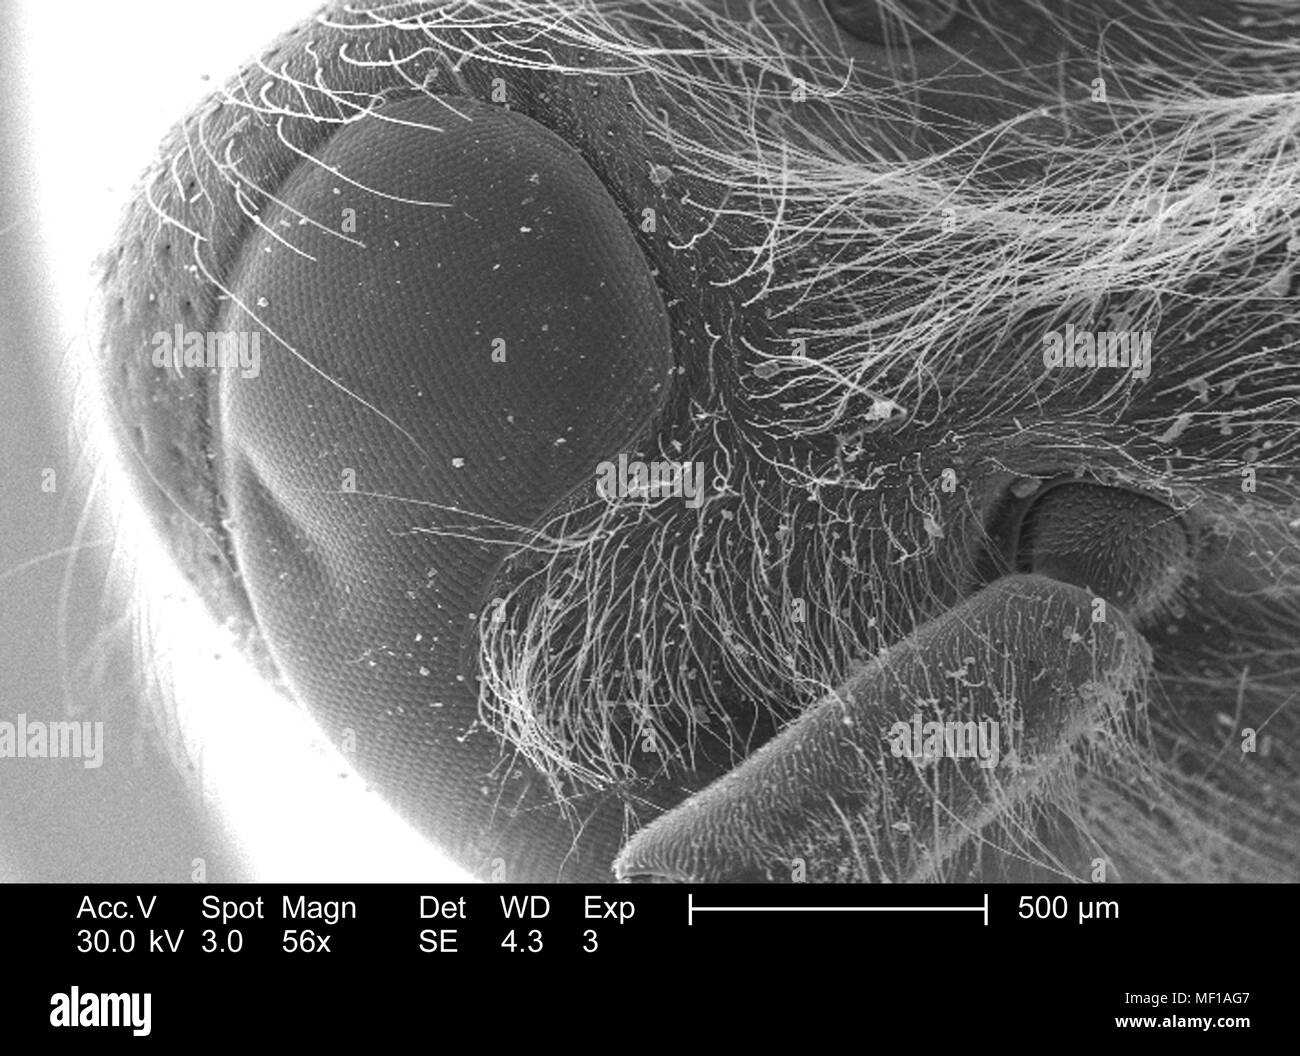 Dettagli morfologiche di un misterioso hymenopteran insetti testa e antenna, raffigurato in 56x di scansione ingrandita al microscopio elettronico (SEM) immagine, 2005. Immagine cortesia di centri per il controllo delle malattie (CDC) / Janice Haney Carr. () Foto Stock